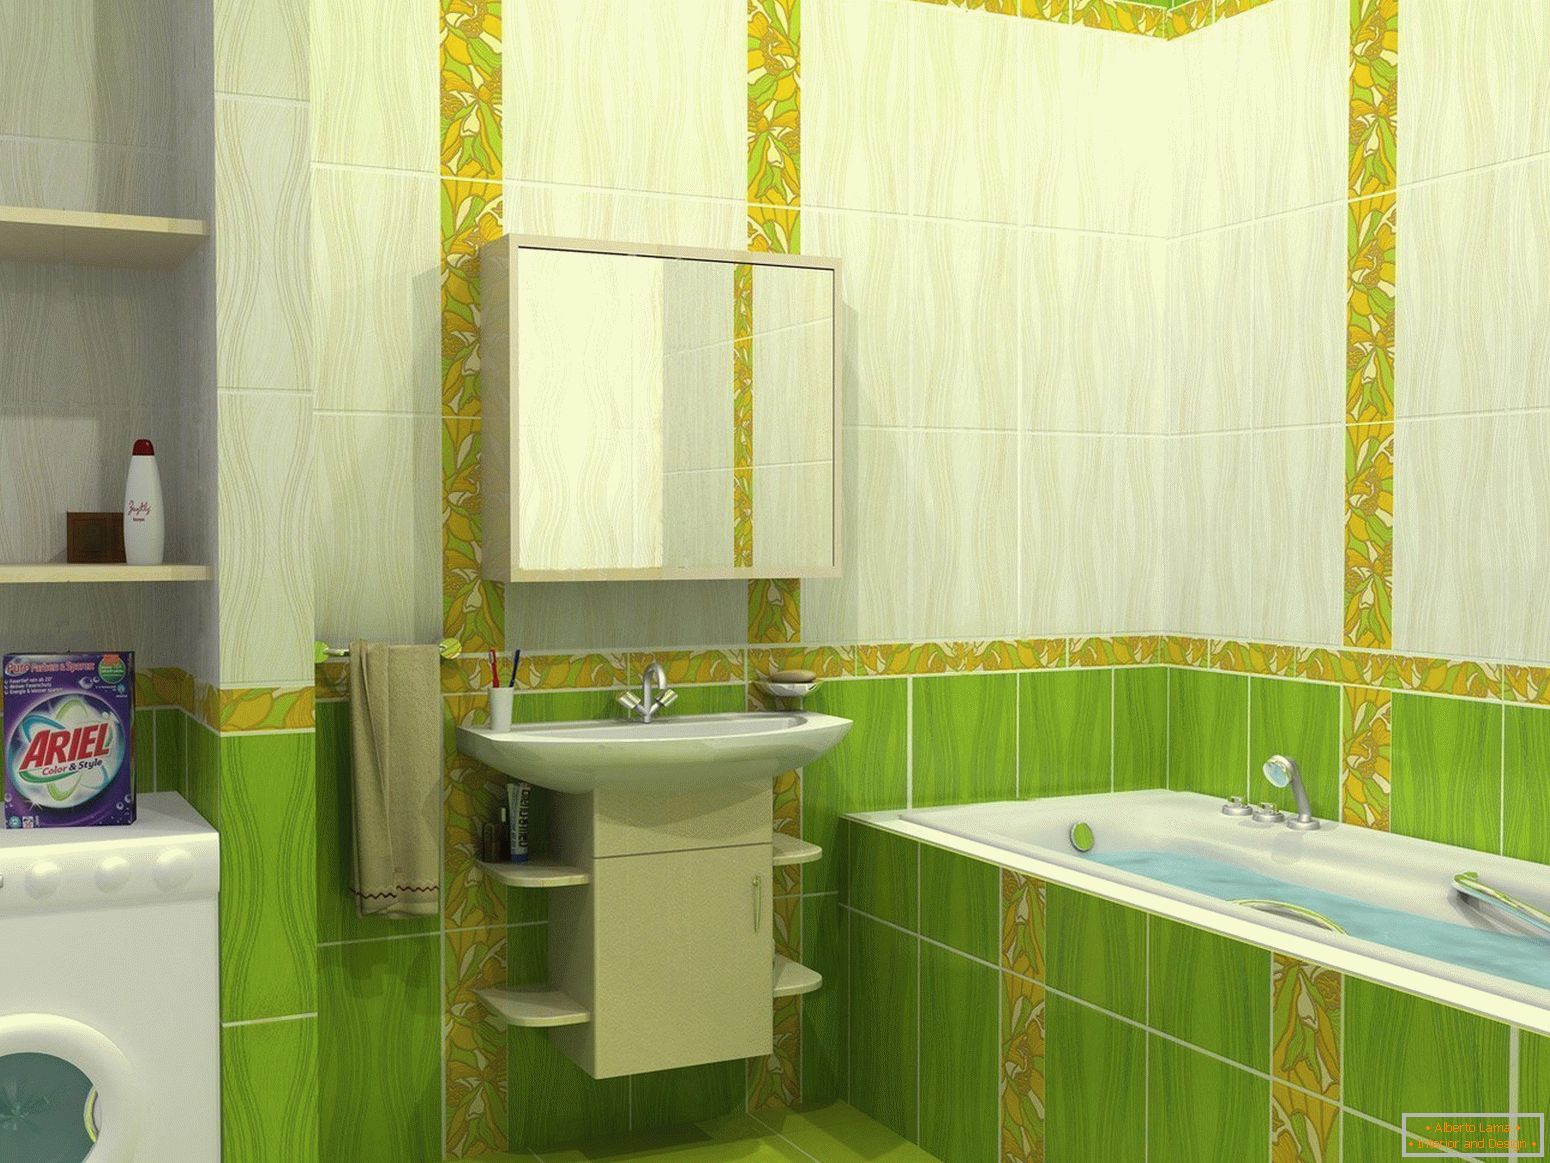 Oblikovanje kupaonice u zelenim tonovima